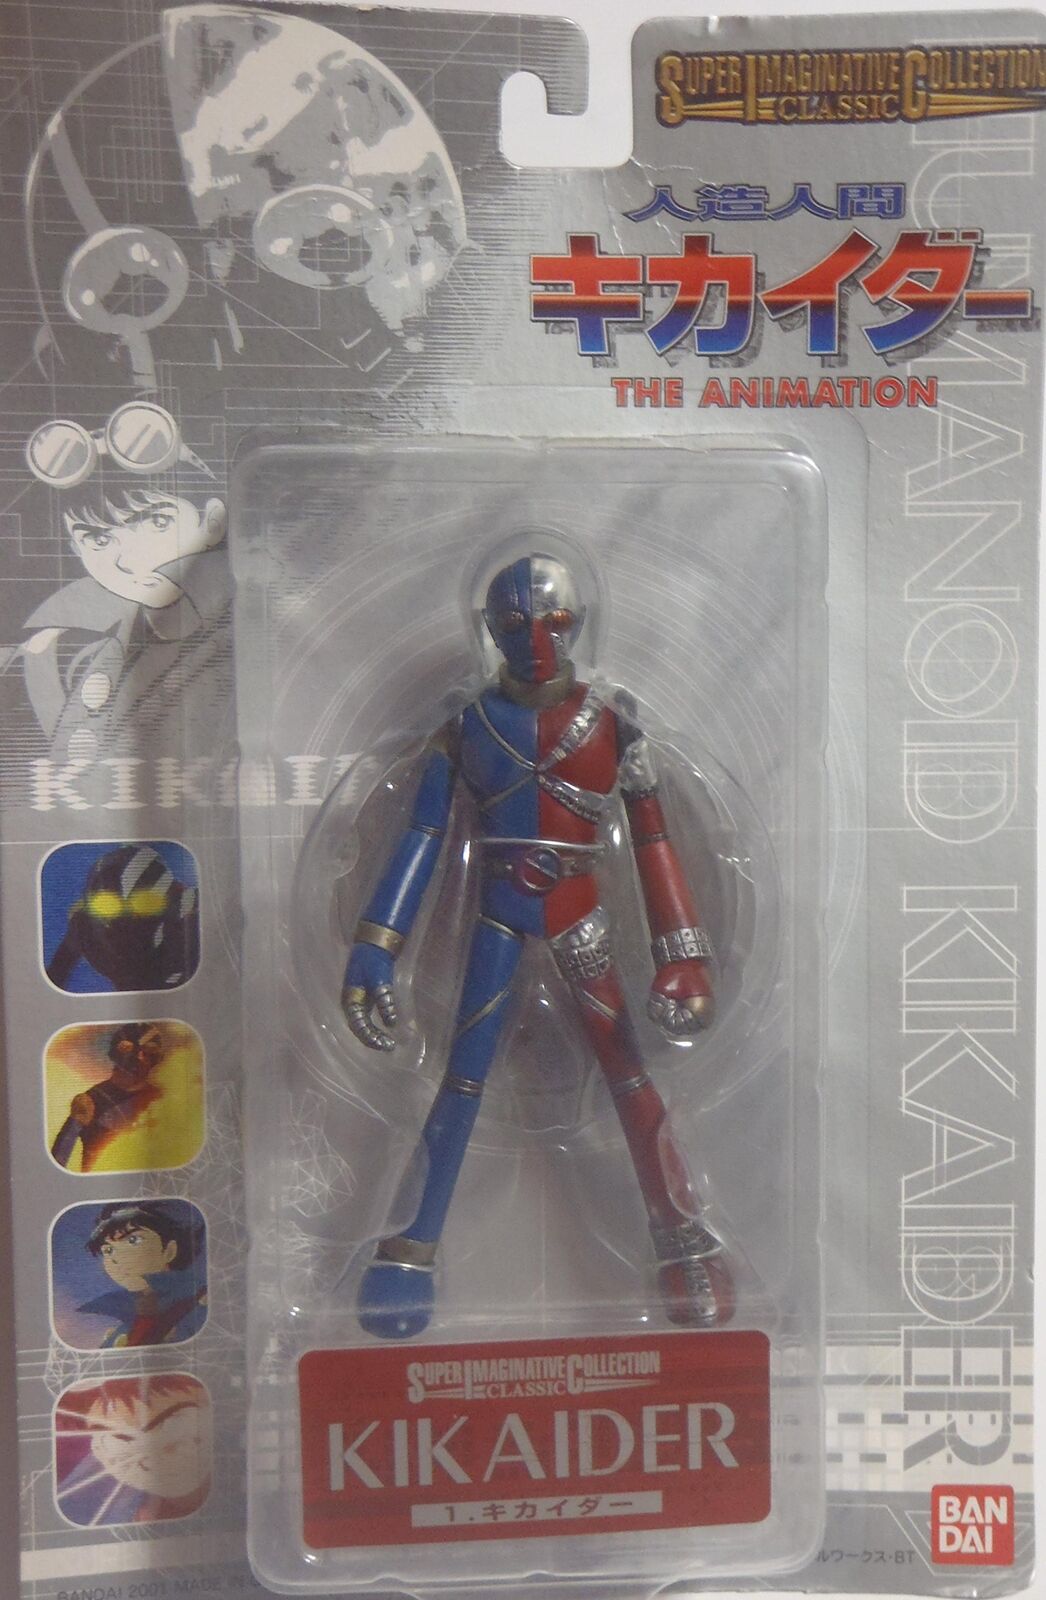 S.I.C. Classic Kikaider Figure Android Kikaider THE ANIMATION Bandai Japan